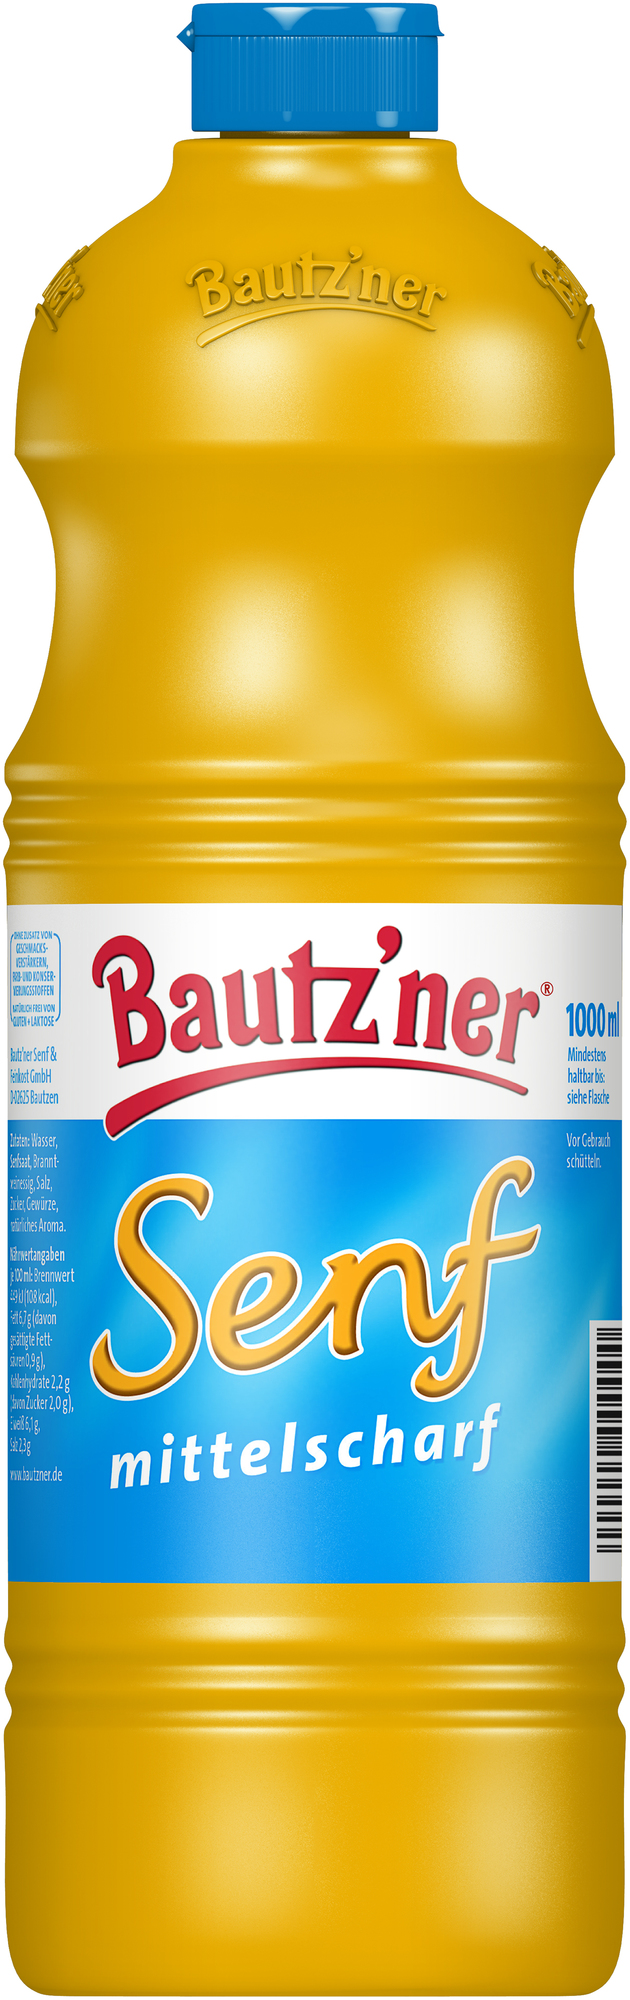 Bautzner Senf mittelscharf 1000ml